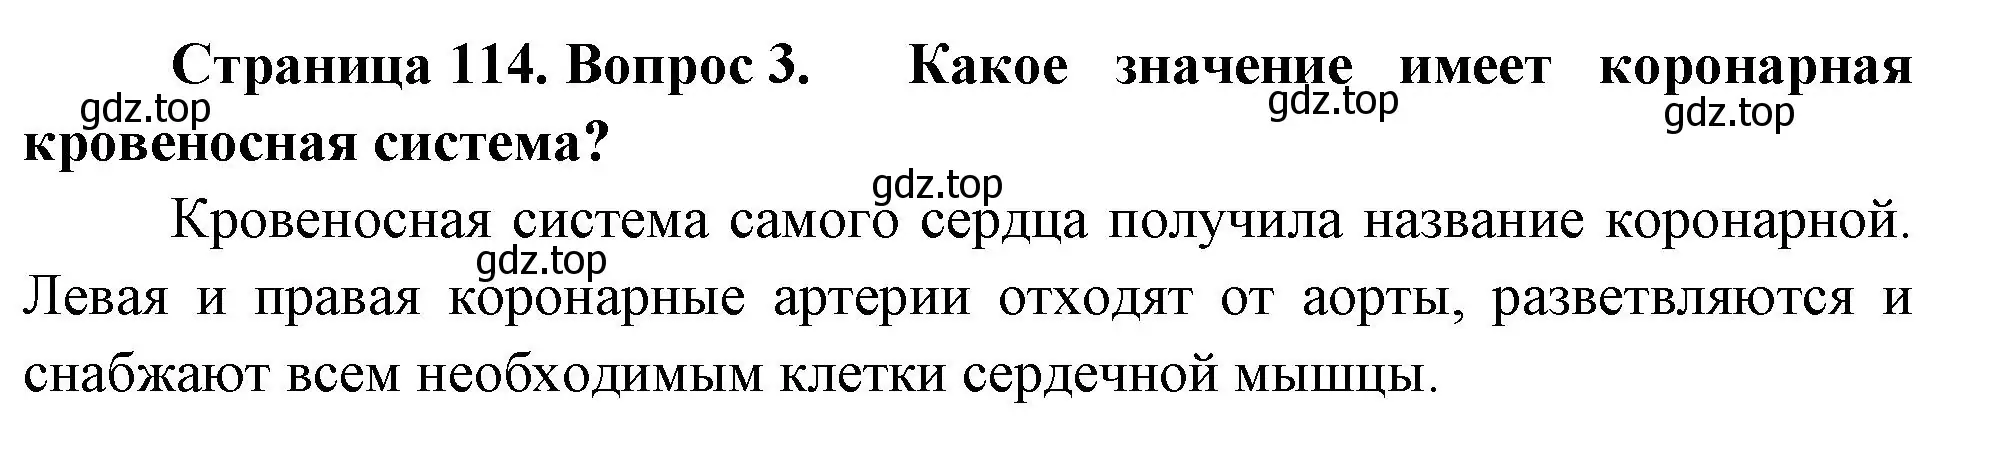 Решение номер 3 (страница 114) гдз по биологии 9 класс Пасечник, Каменский, учебник